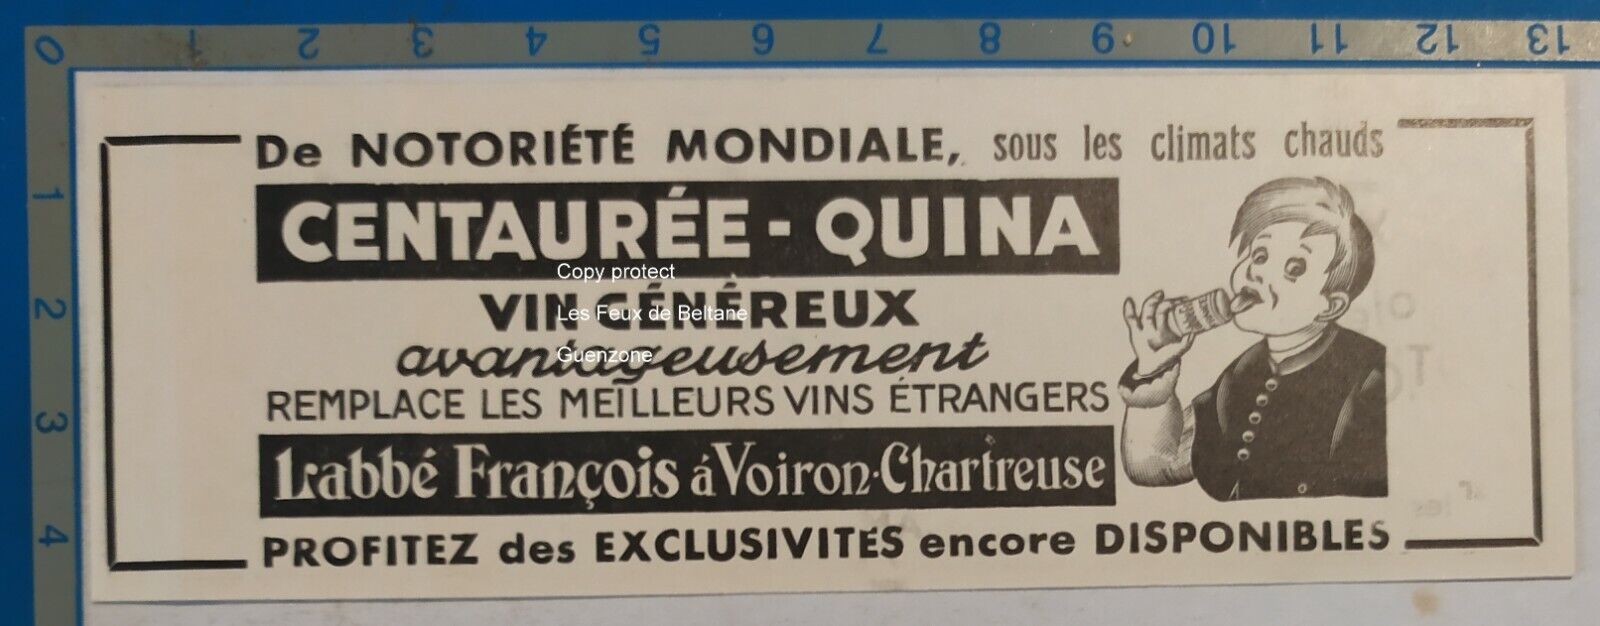 CENTAUREE QUINA VIN LABBE FRANCOIS VUERON CHARTREUSE advertisement 1939 advert 